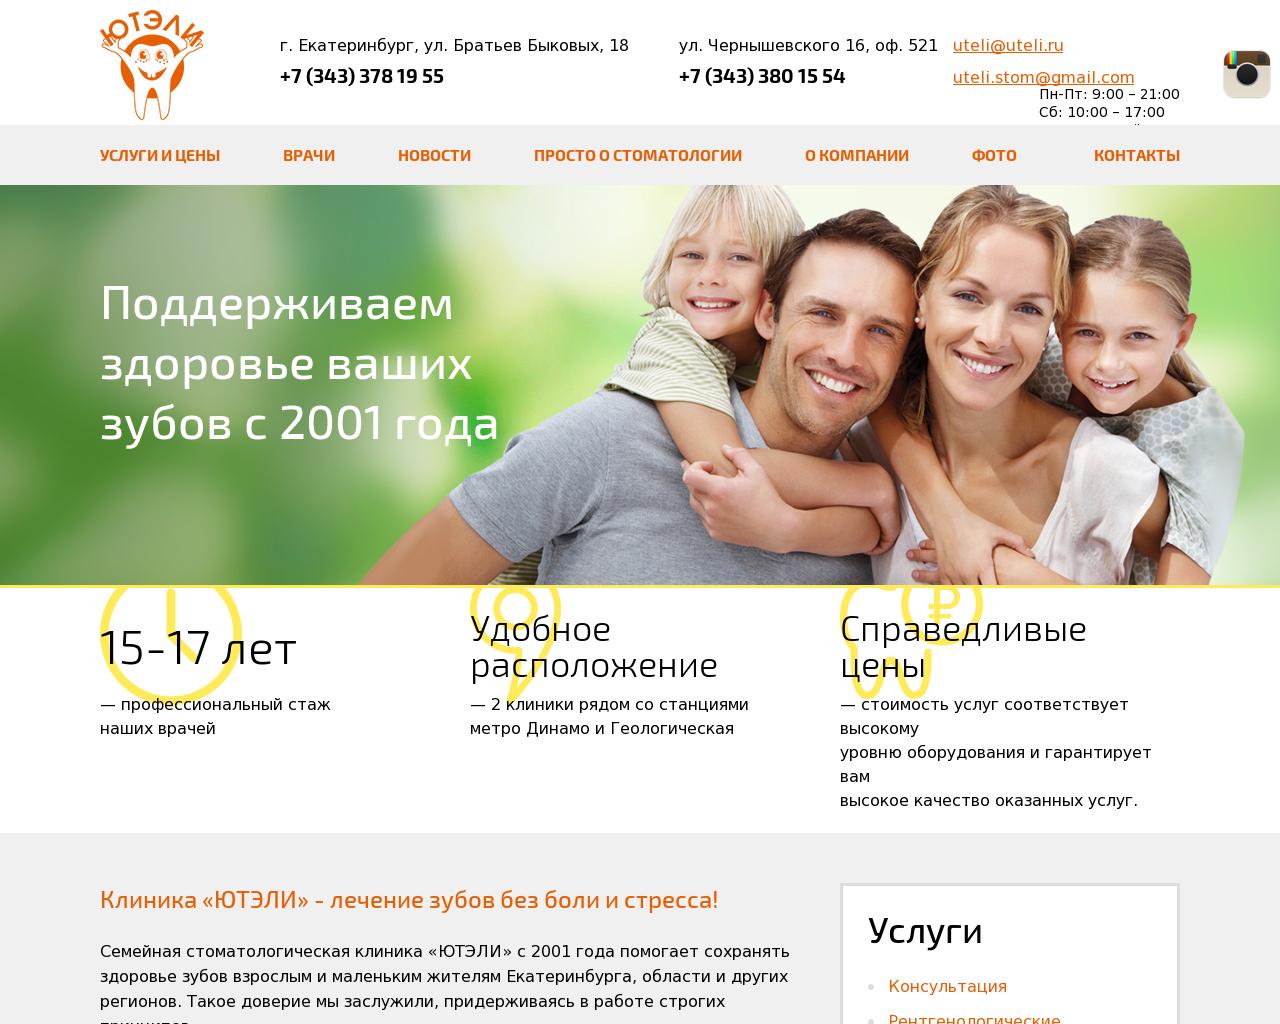 Изображение сайта uteli.ru в разрешении 1280x1024